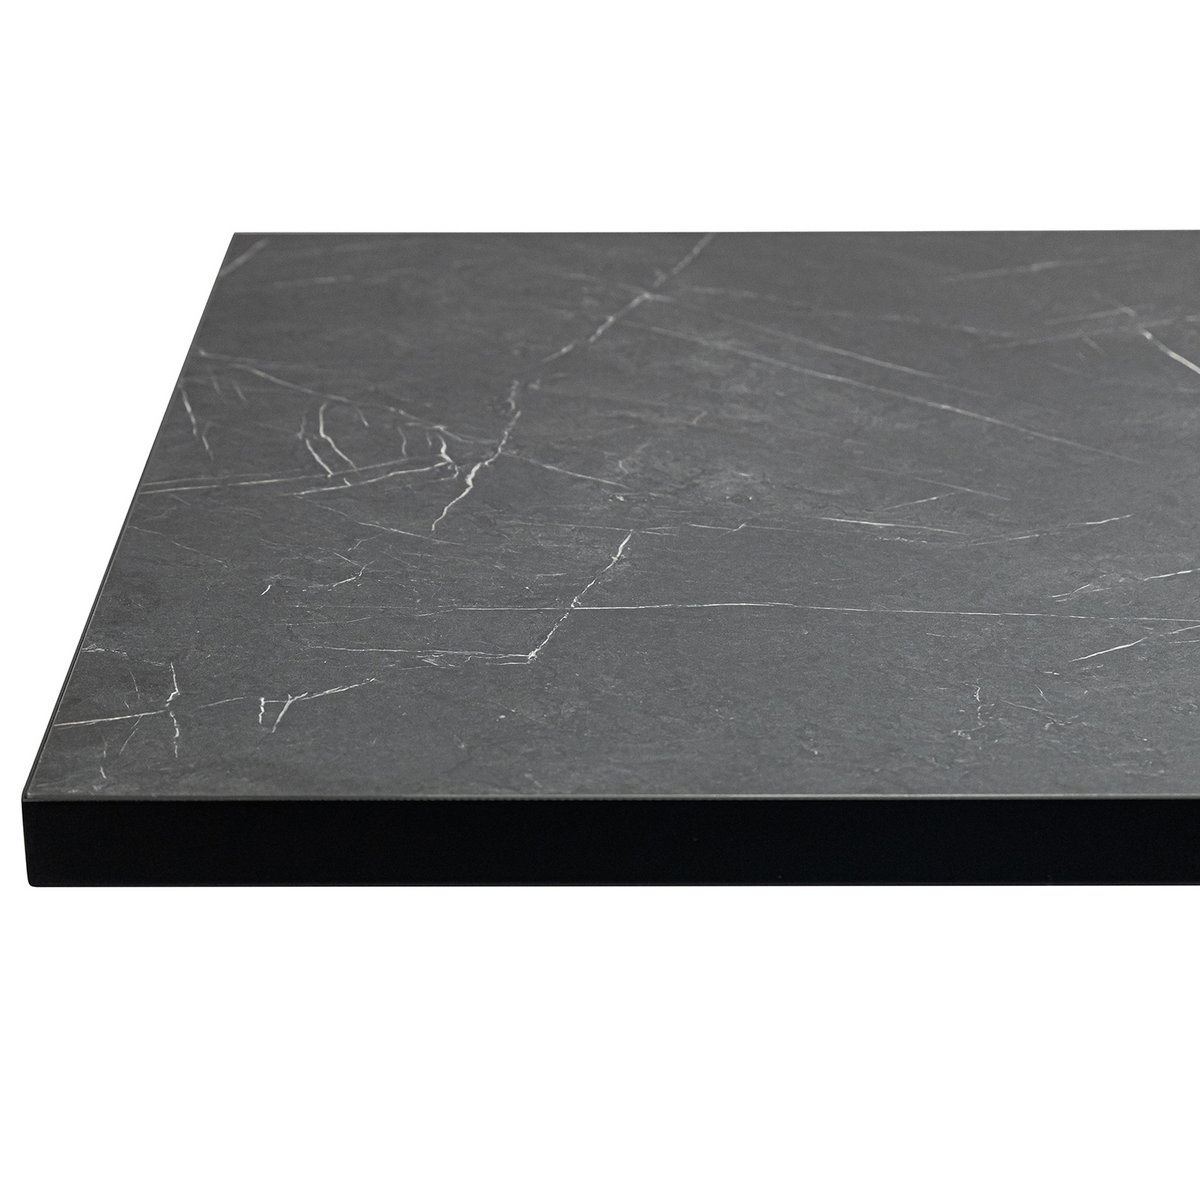 KantoormeubelenPlus Stalux Eettafel 'Gijs' 180 x 100cm, kleur zwart / zwart marmer